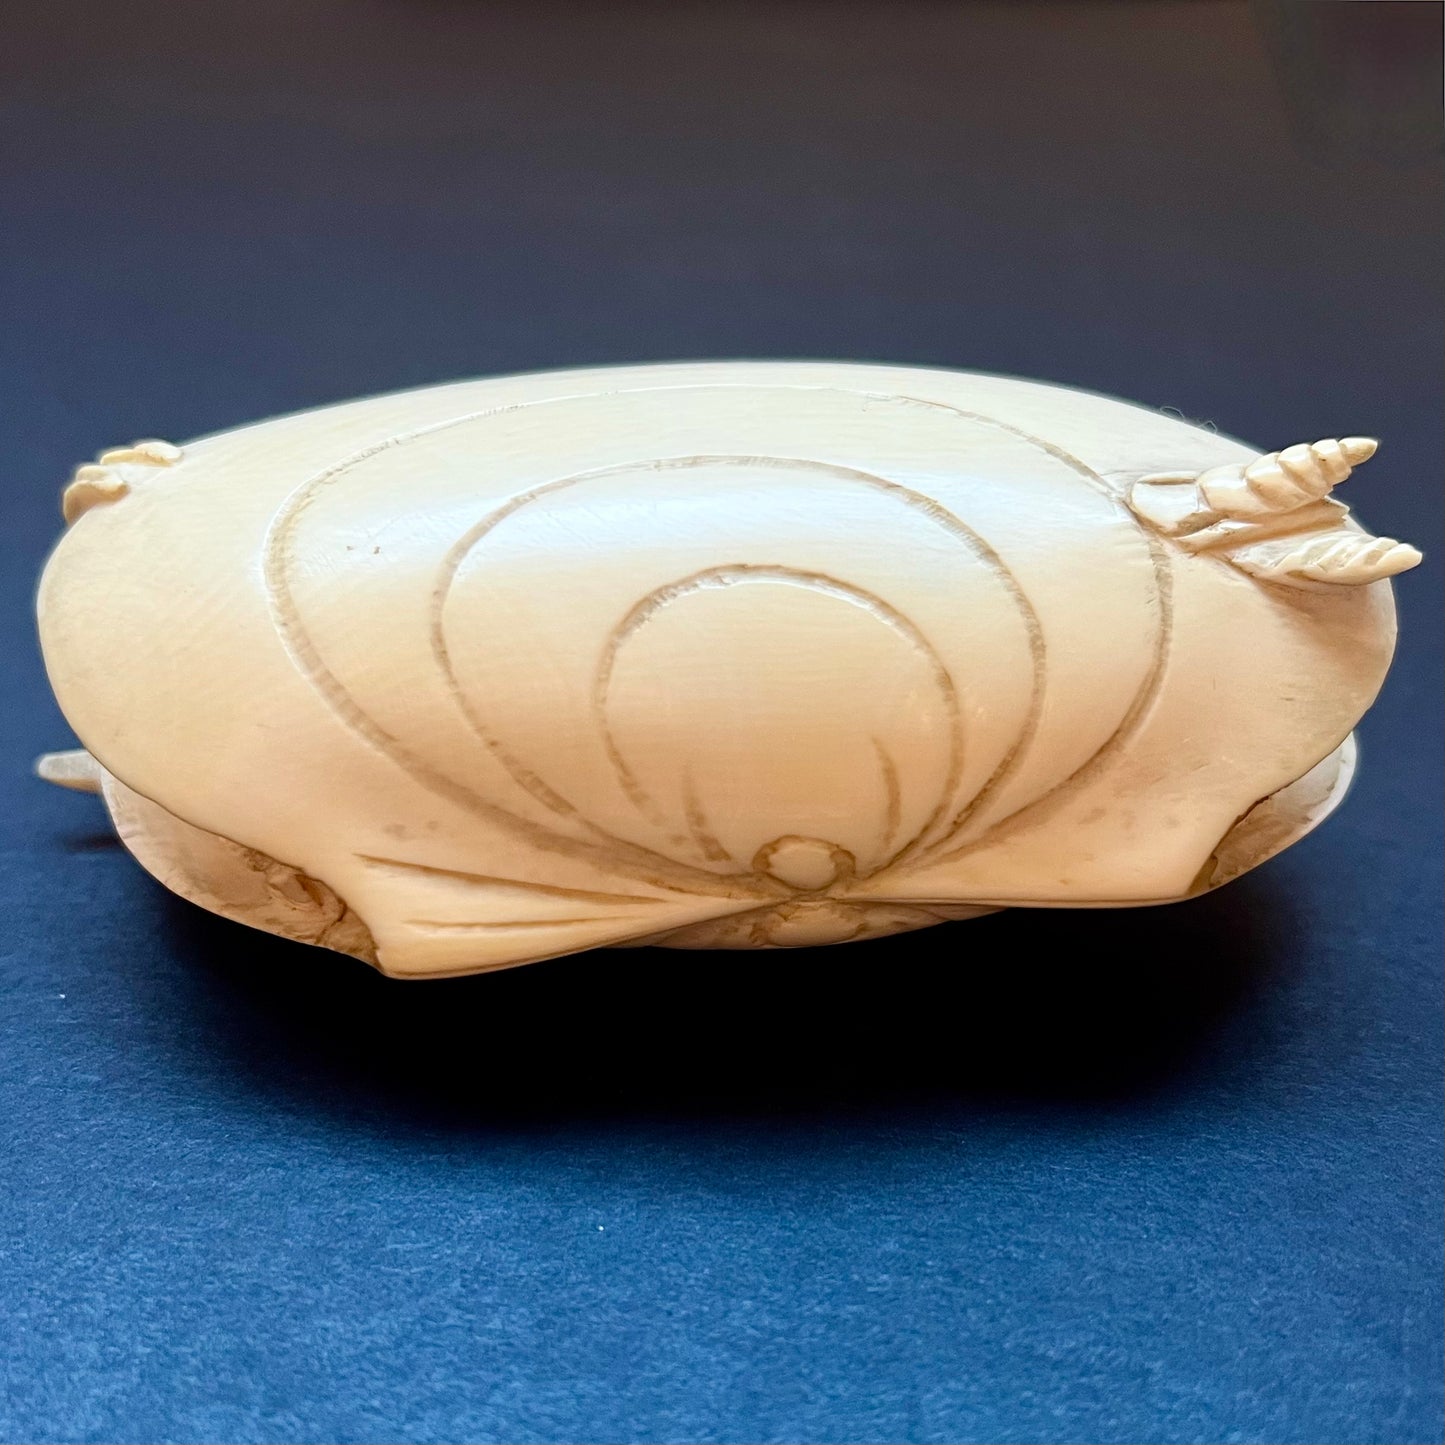 罕见而可爱的 20 世纪早期中国穴堀式“蛤蜊之梦”雕刻，约 20 世纪 20 年代